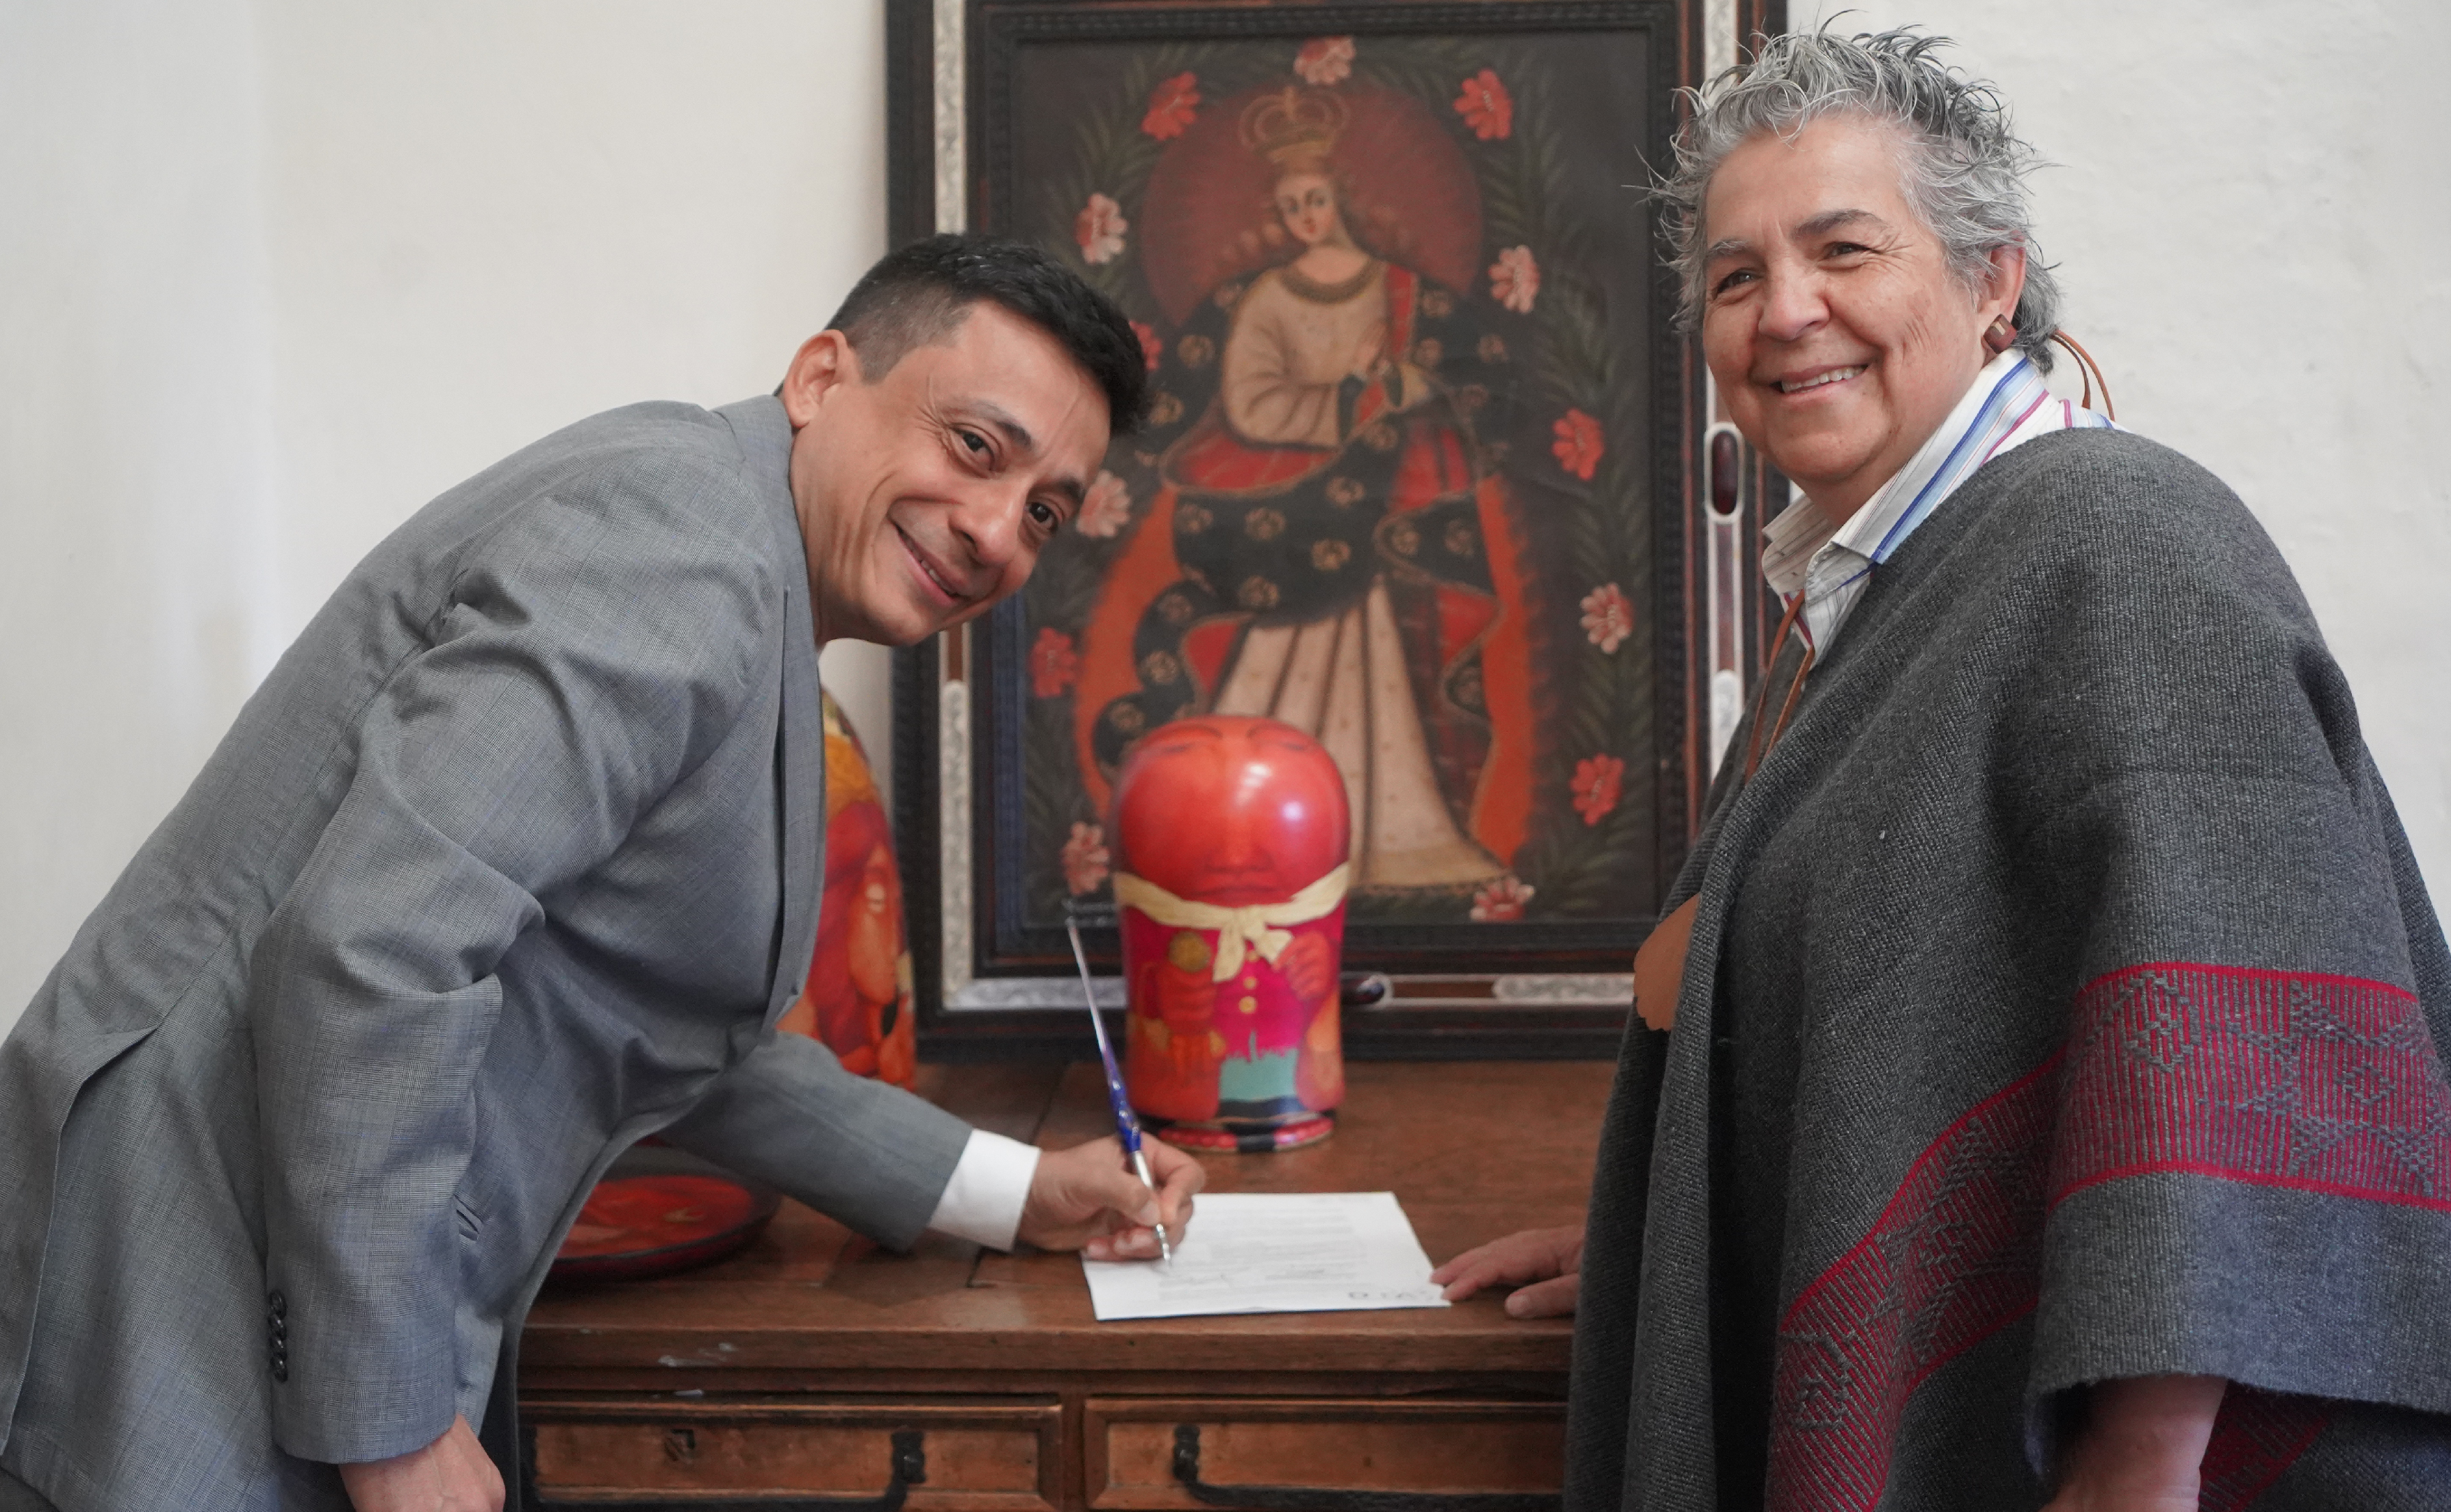 Acuerdos de colaboración Derechos de autor en Colombia